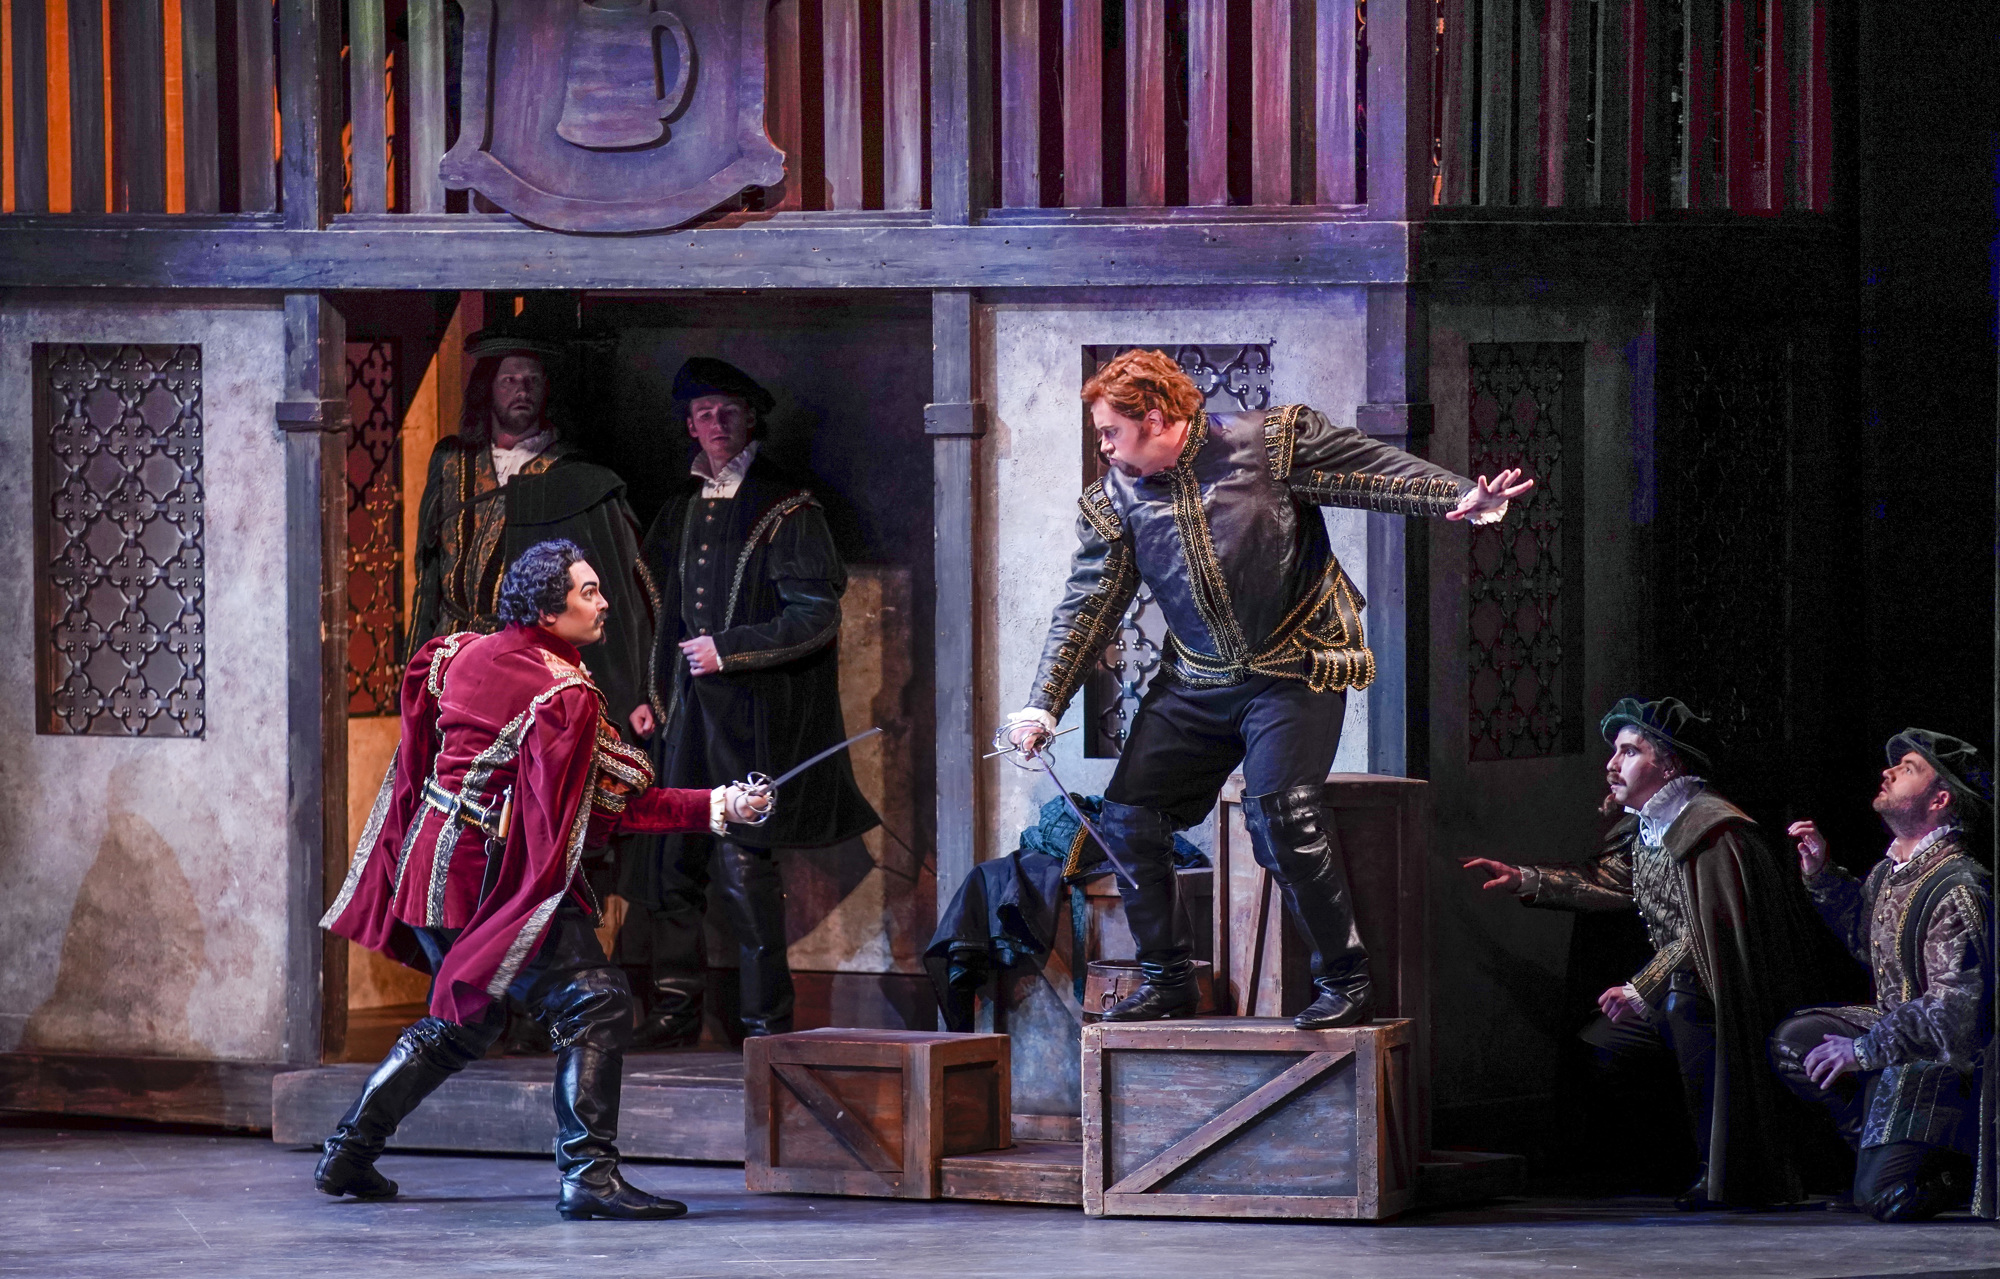 Samuel Schlievert, as Tybalt, duels with Matthew Hanscomb, as Mercutio. (Photo by Rod Millington)